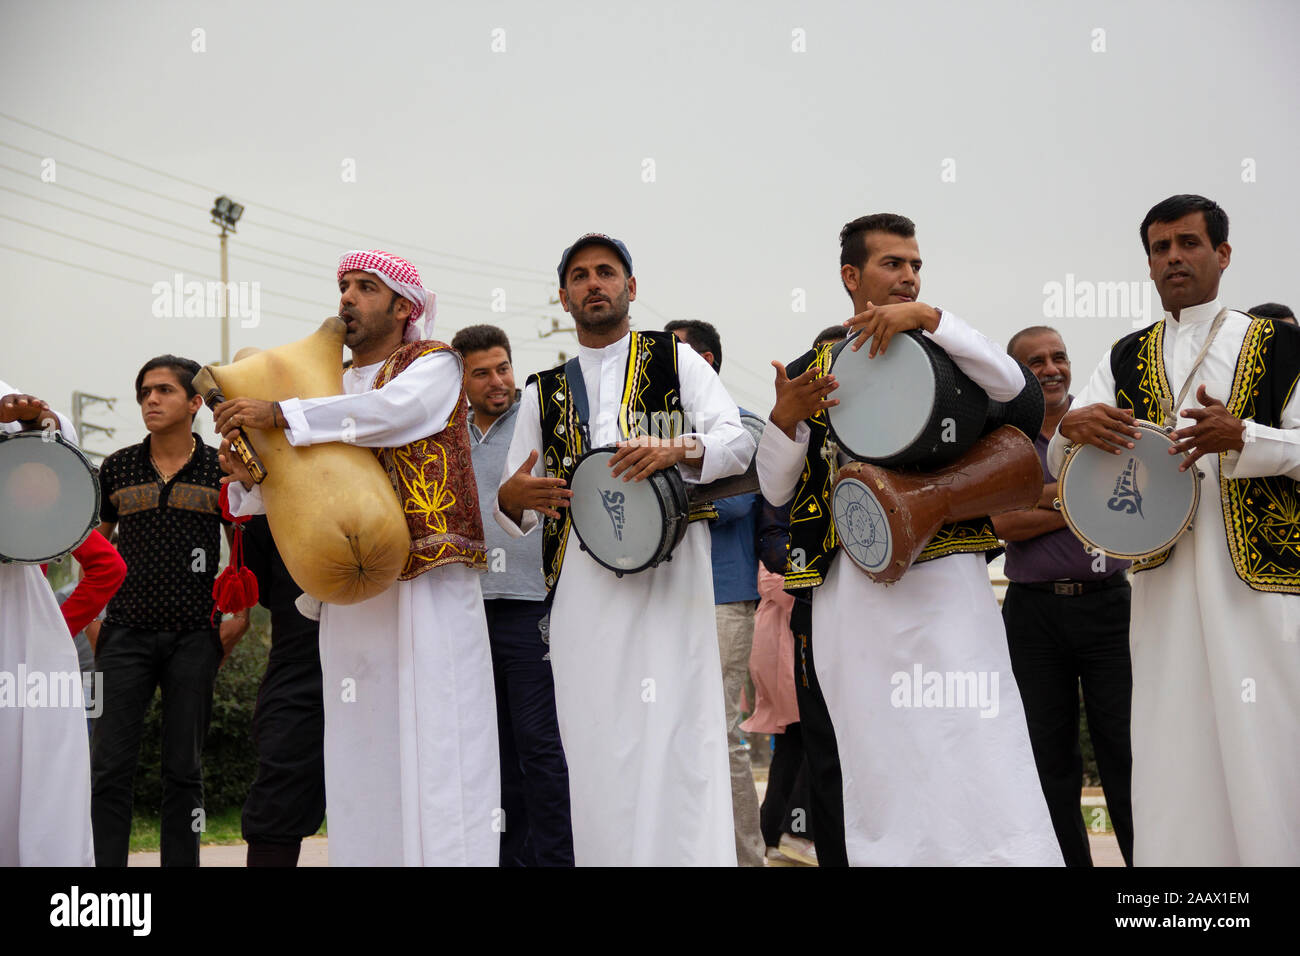 Une ville côtière au sud de l'Iran avec une traditionnelle culture mixte de perses et arabes. Ici une musique de mariage groupe joue de la musique folk pour la cérémonie. Banque D'Images